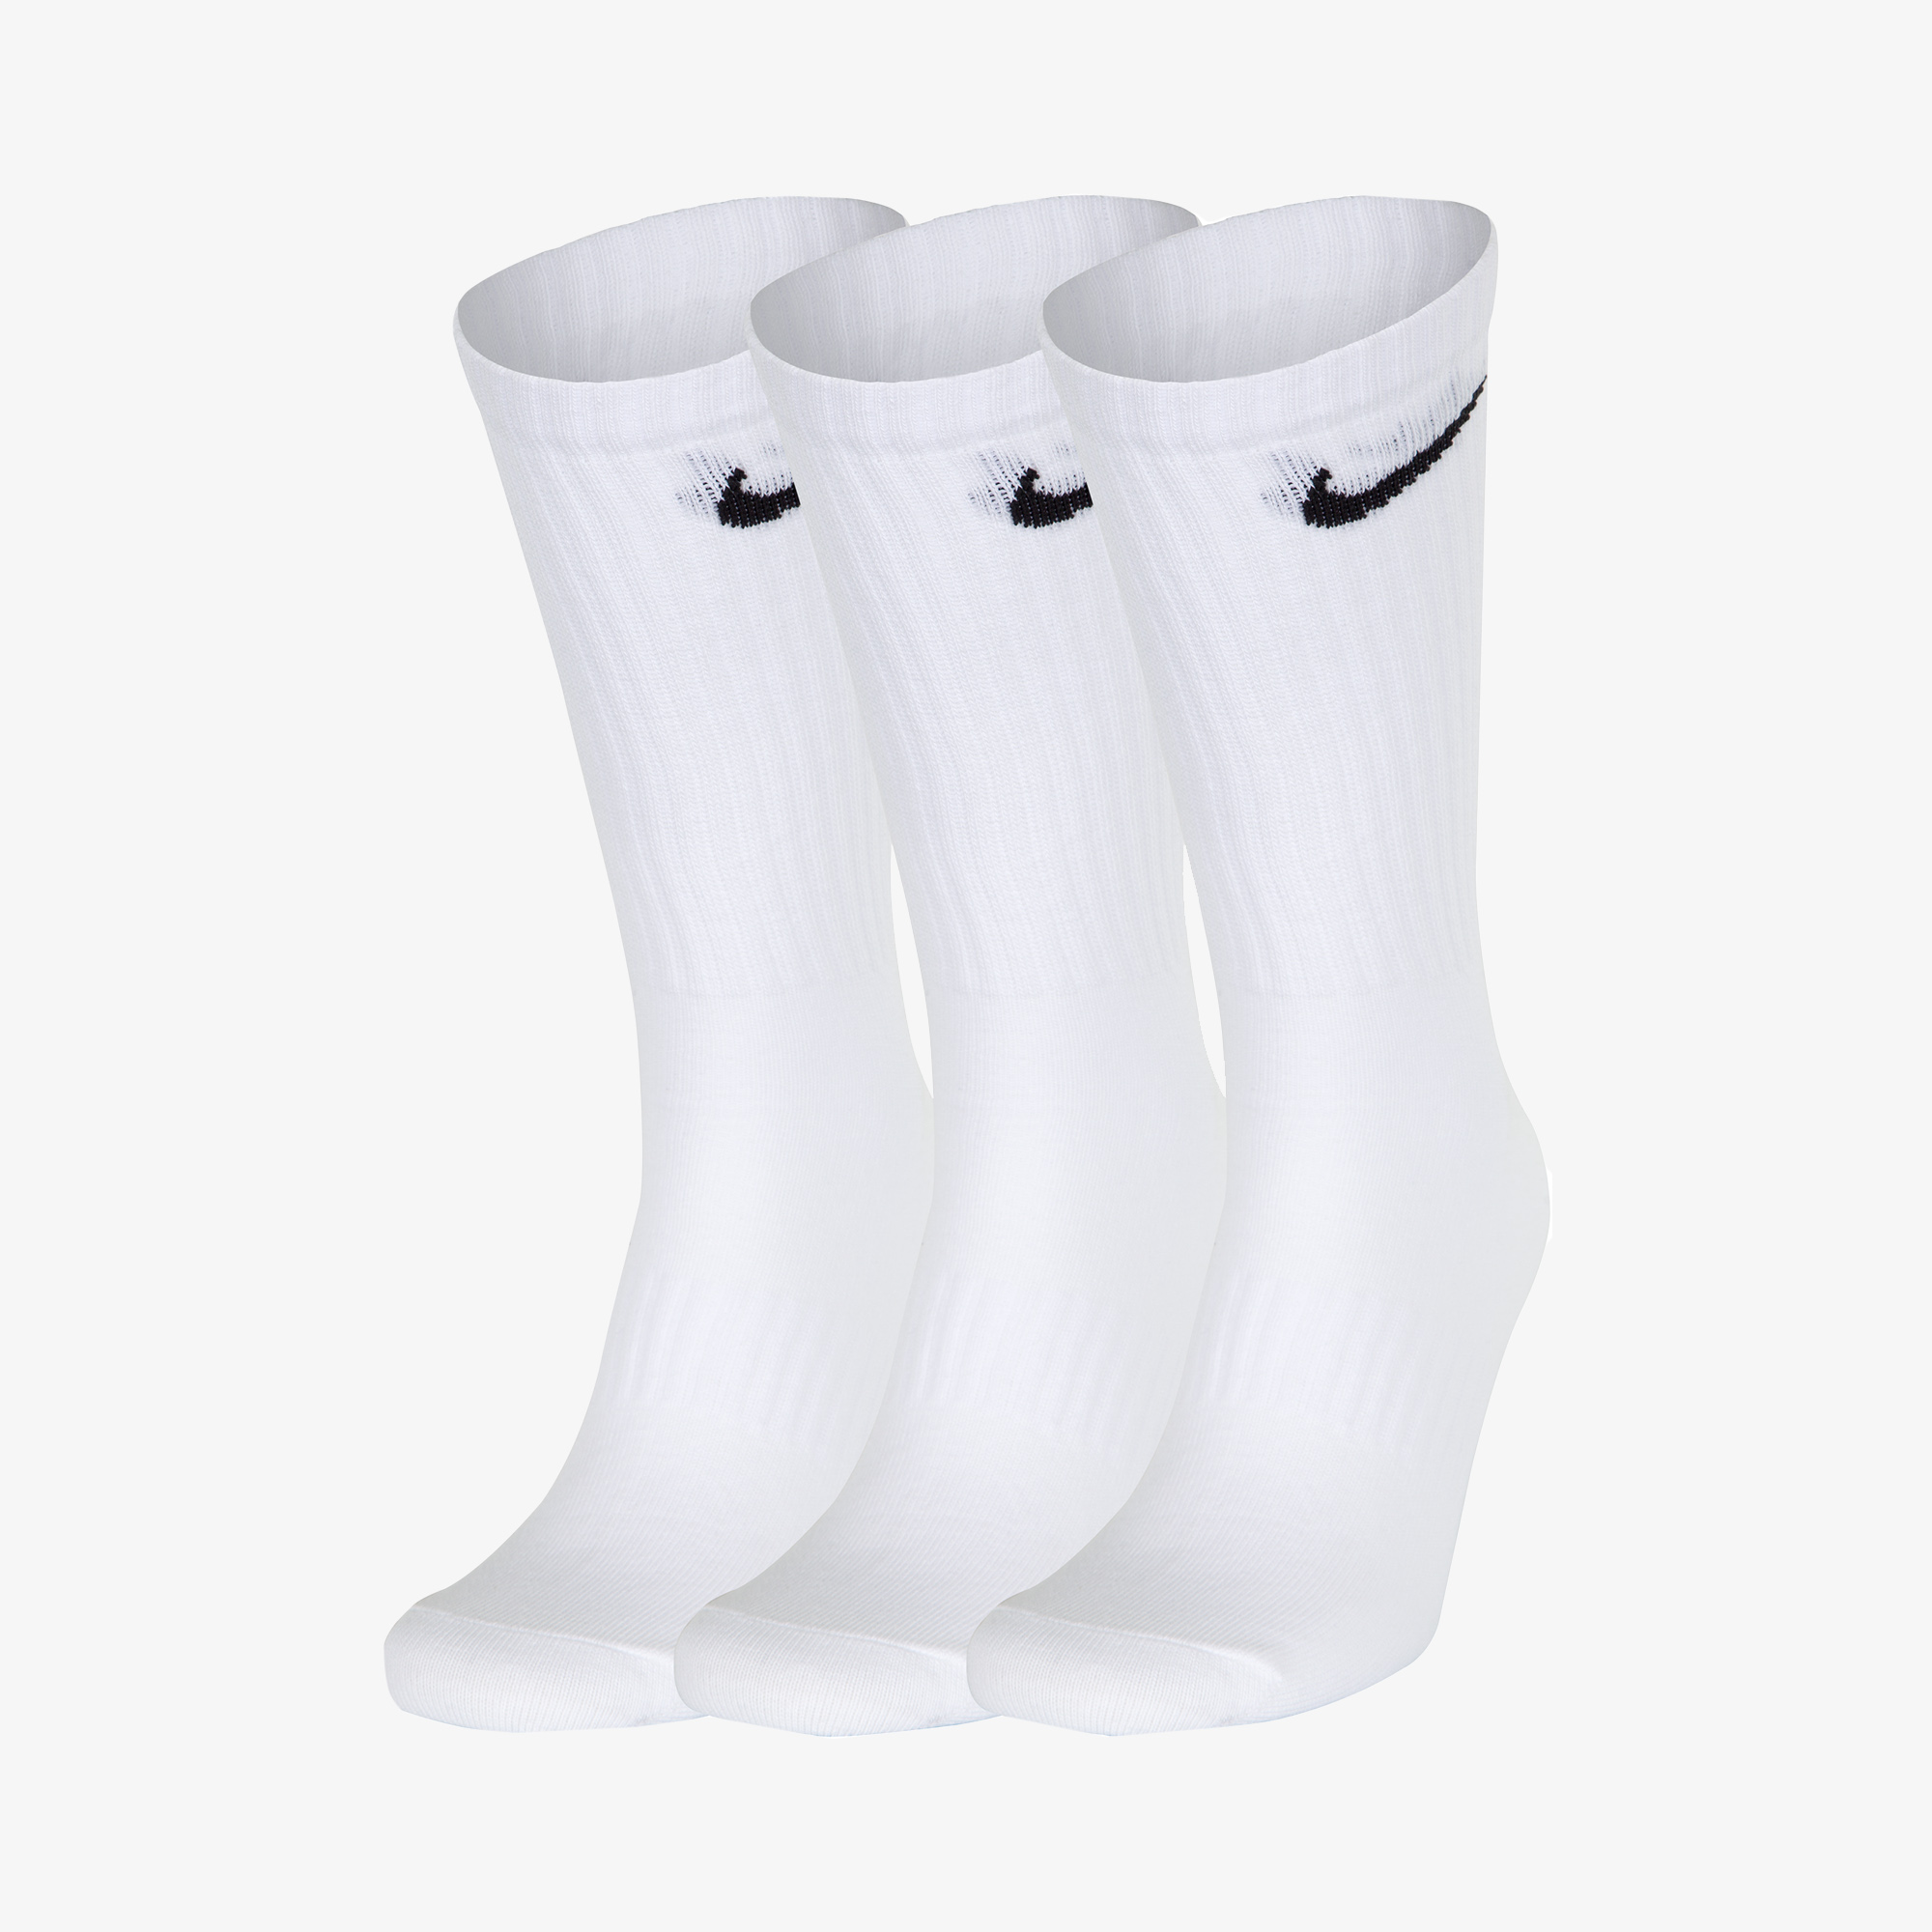 Носки Nike Nike Everyday Lightweight, 3 пары SX7676N06-100, цвет белый, размер 41-45 SX7676-100 - фото 1